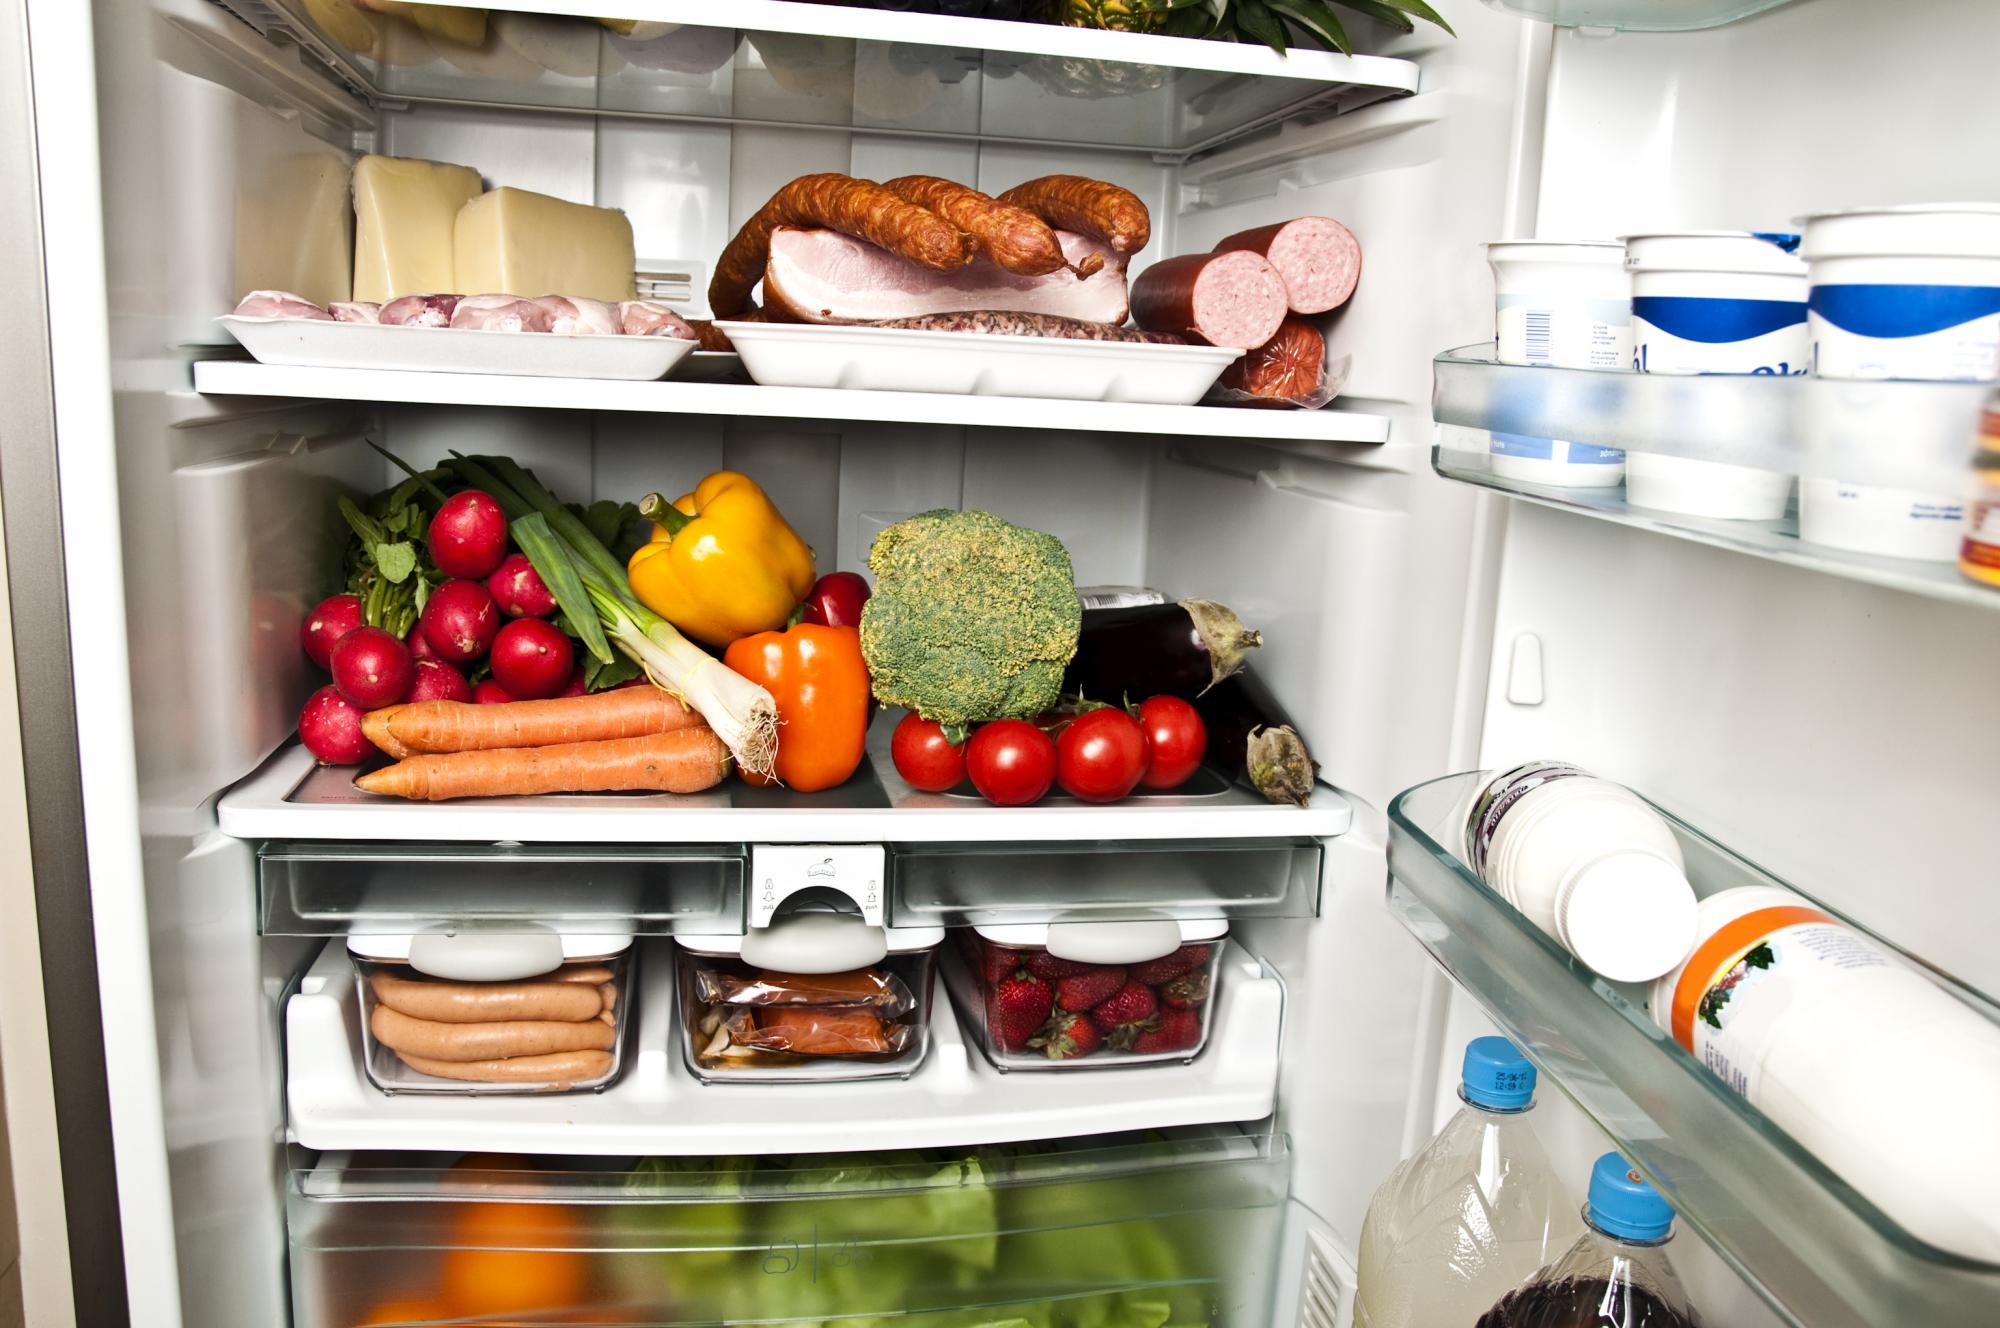 Mantén los alimentos separados y protegidos; procura que cada uno se conserve en la temperatura adecuada. Respeta las cadenas de frío.